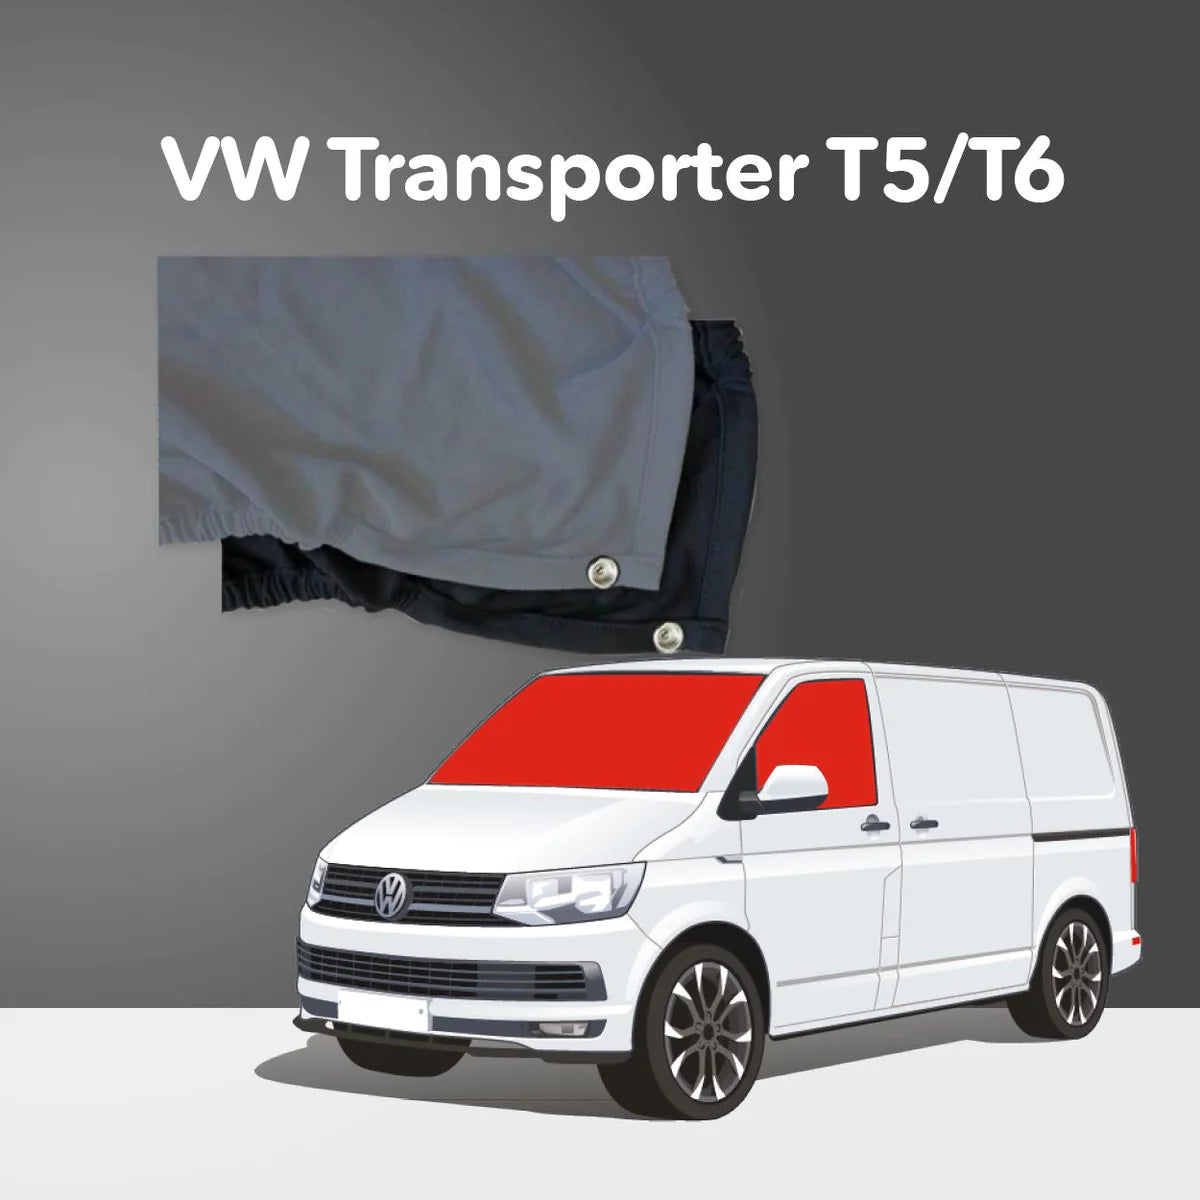 Vorhang-Satz Fahrerhausverdunkelung für den VW T5 / T6, Windschutzscheibe  und Seitenfenster